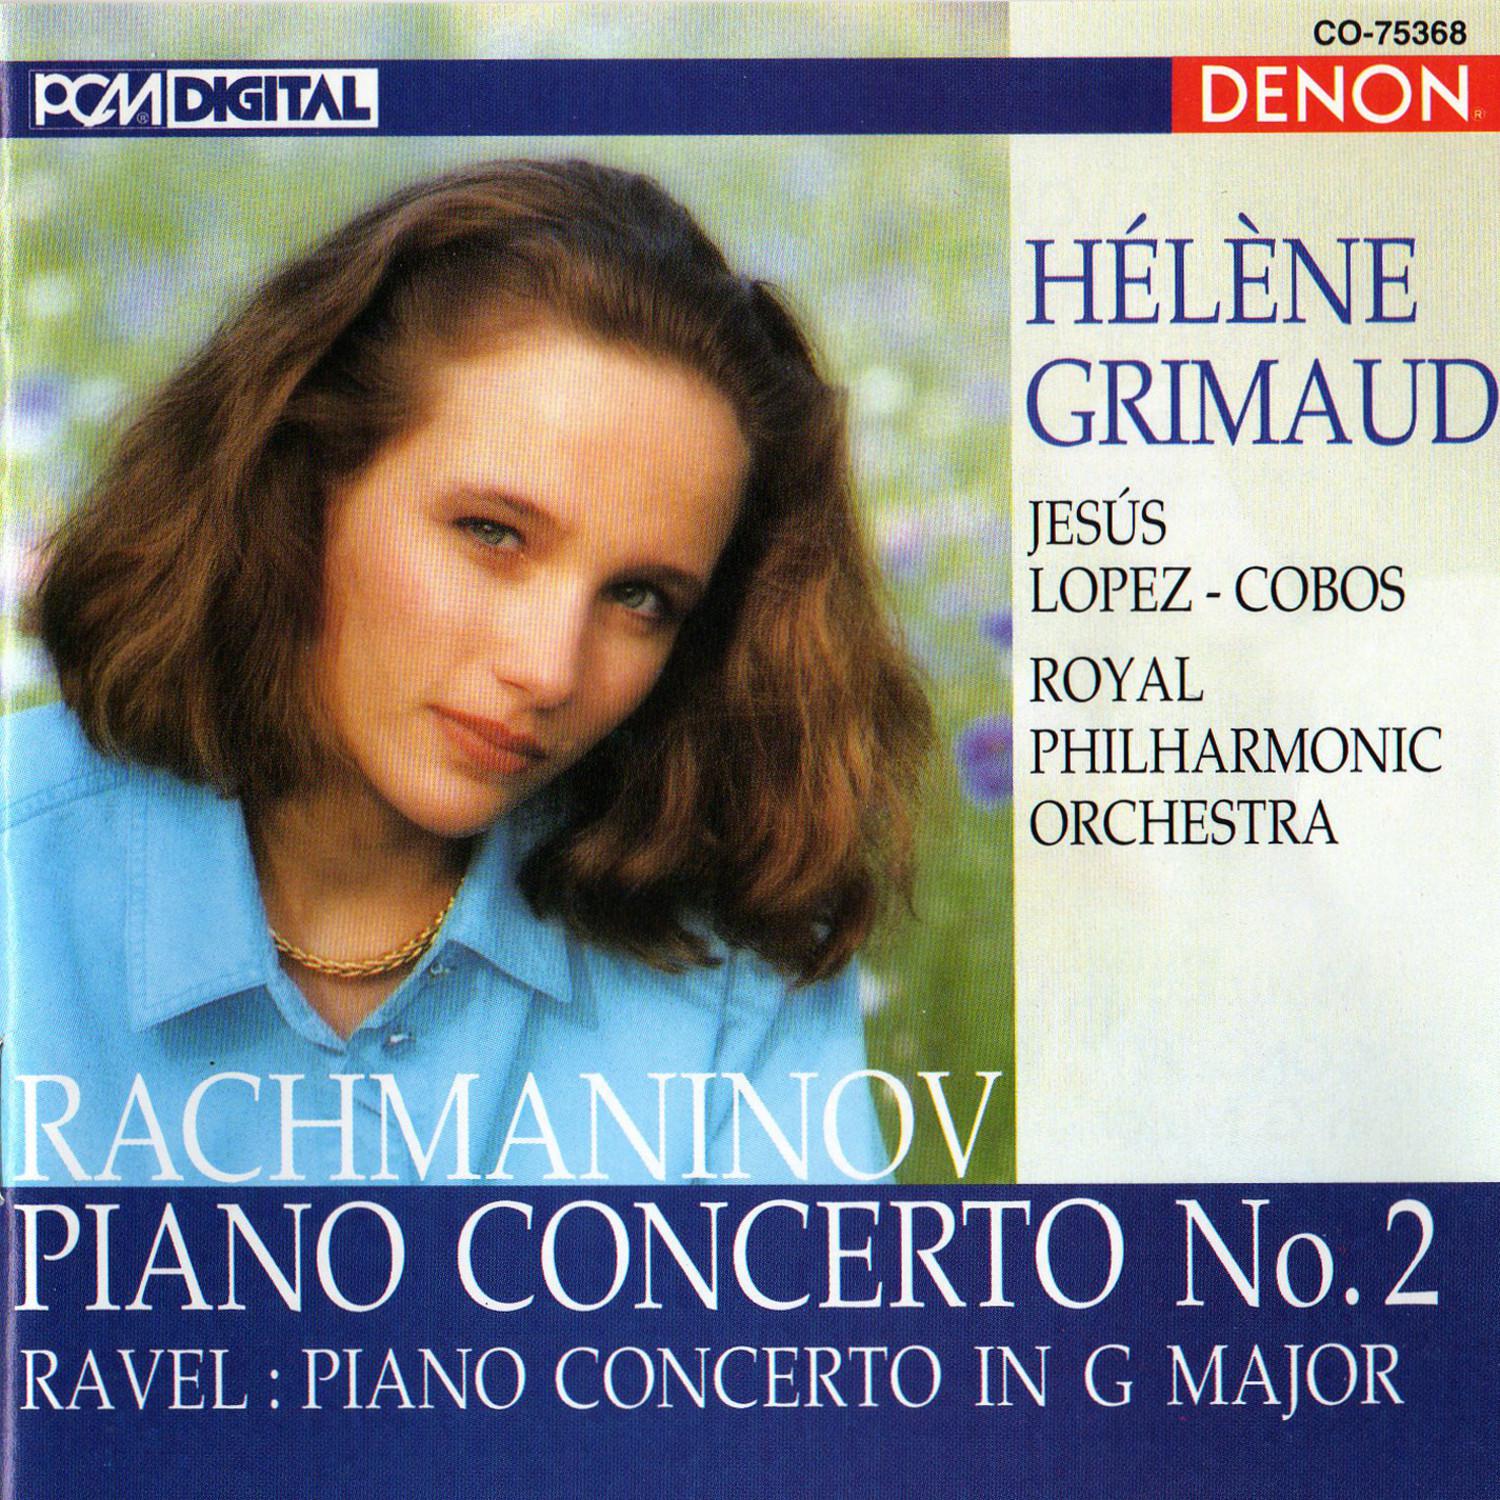 Concerto for Piano and Orchestra No. 2 In C Minor, Op. 18: III. Allegro Scherzando